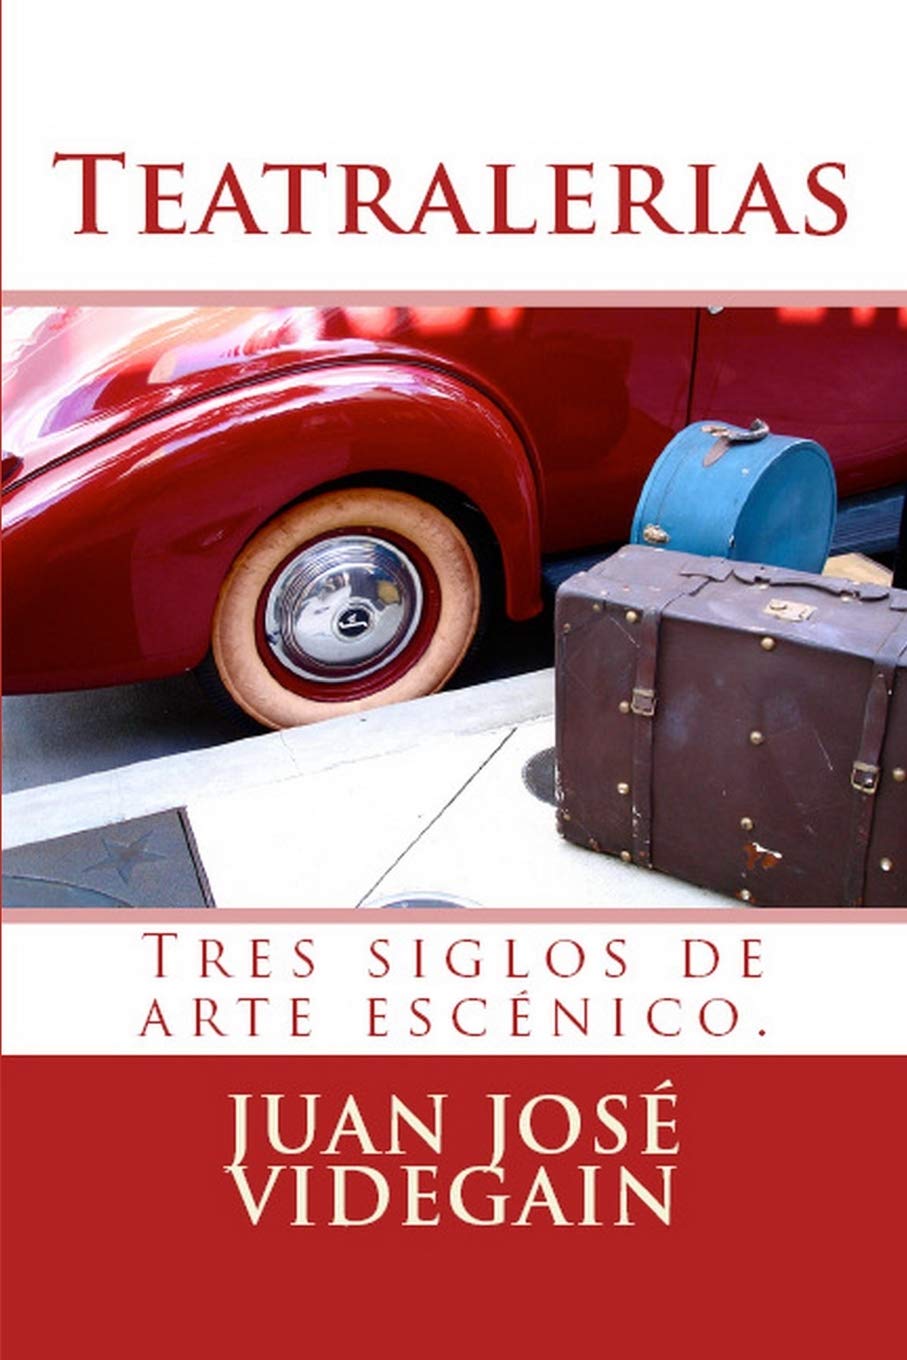 Libro: Teatralerias: Tres siglos de arte en las sagas artísticas españolas por Juan José Videgain